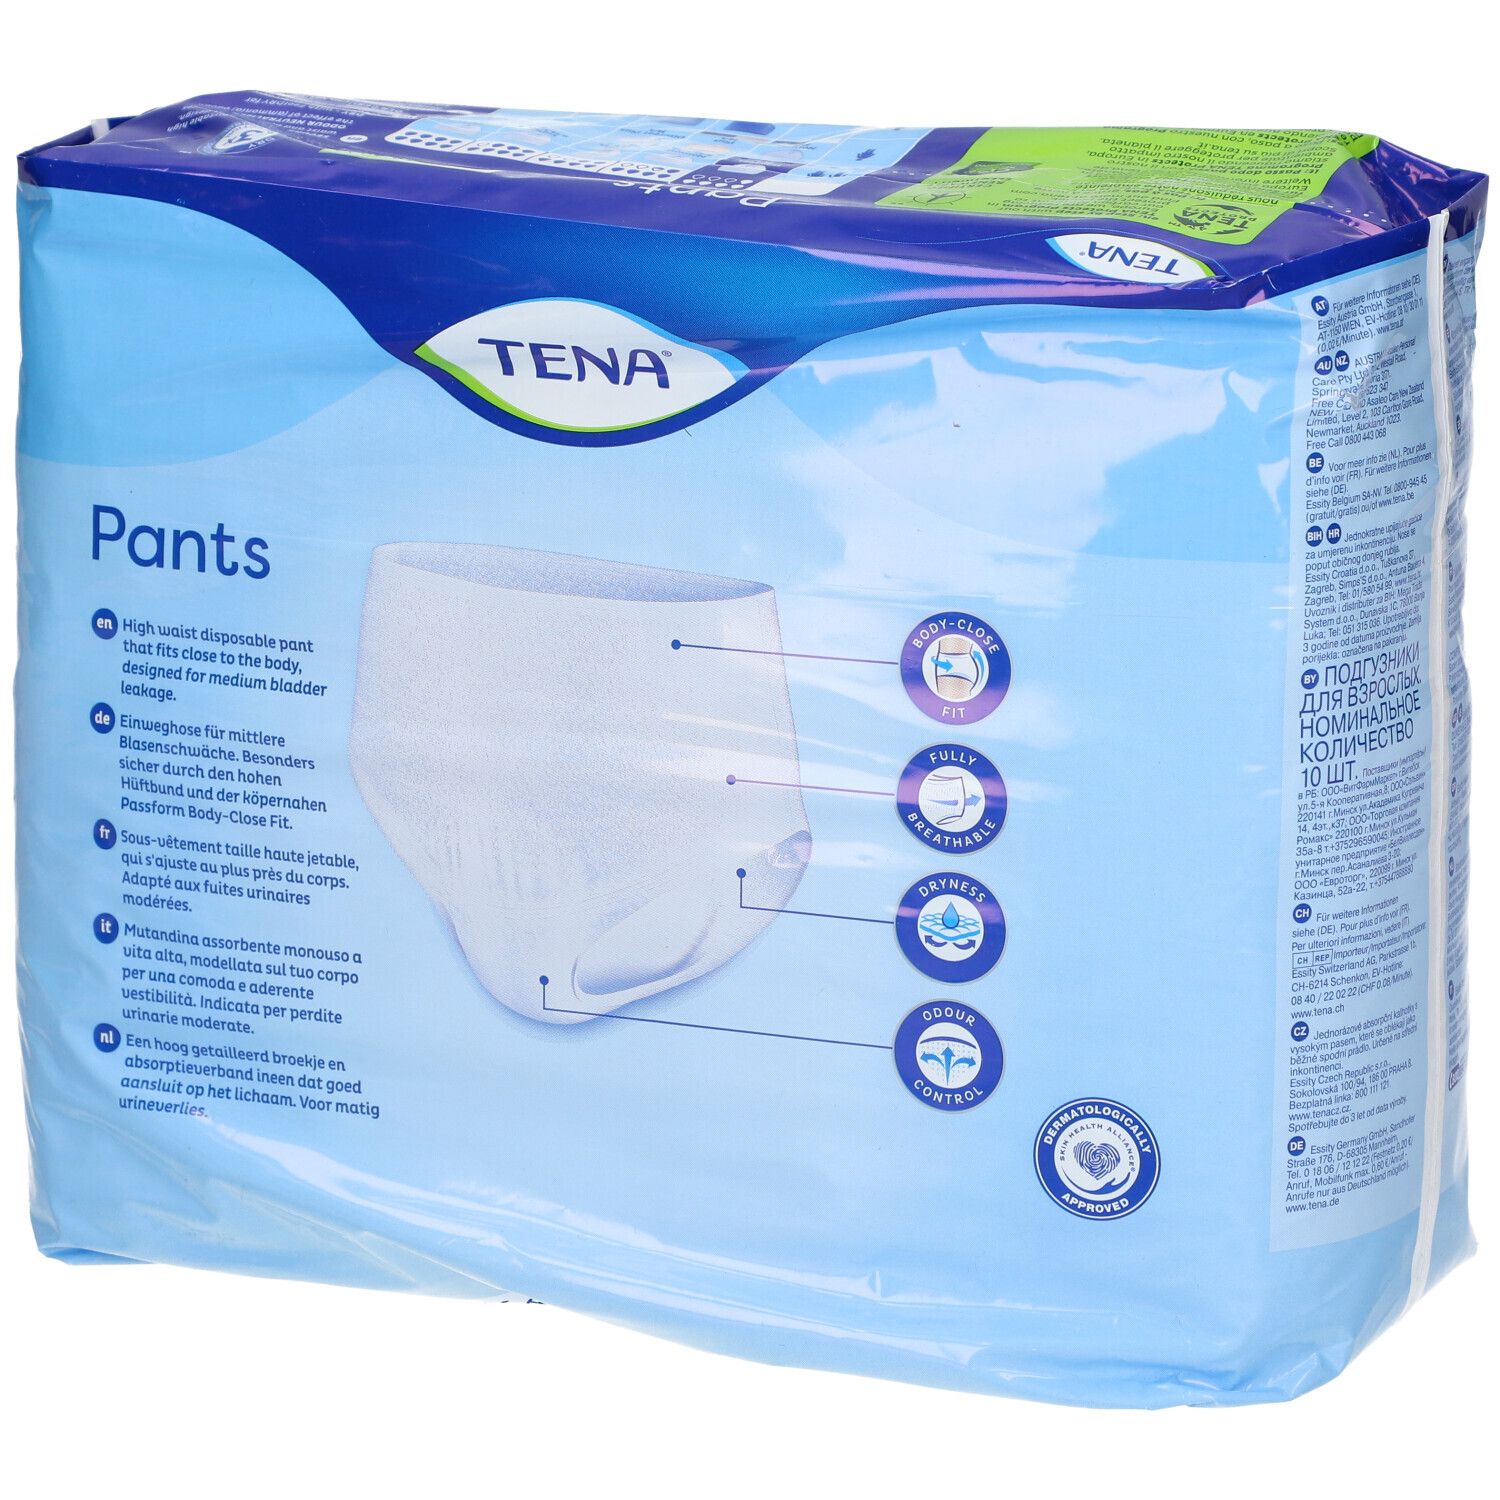 TENA® Pants Discreet L